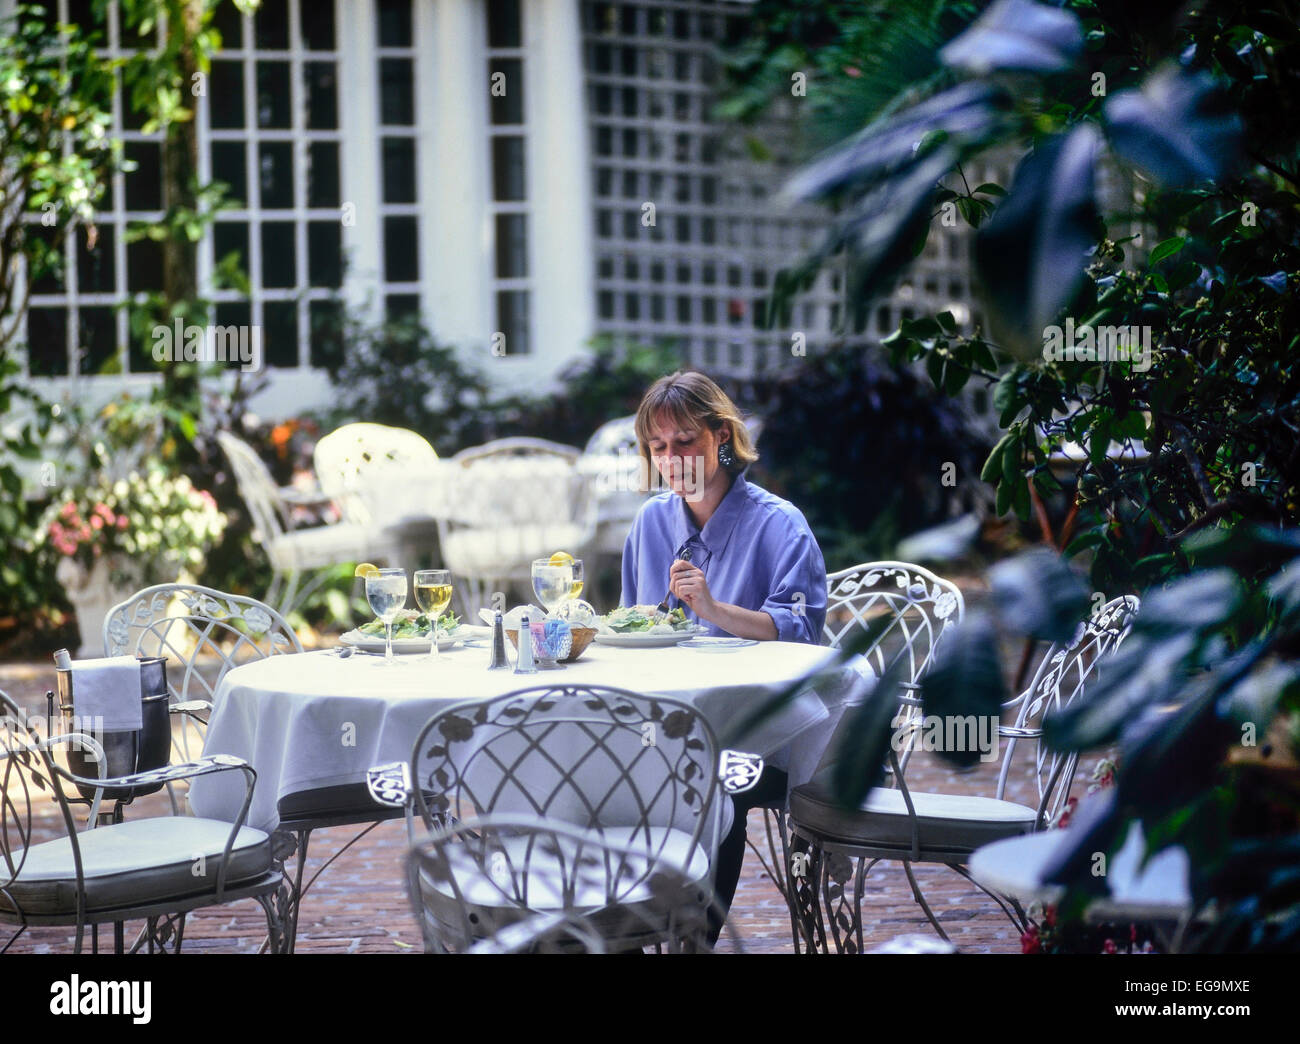 Woman eating lunch dans un restaurant Courtyard Banque D'Images